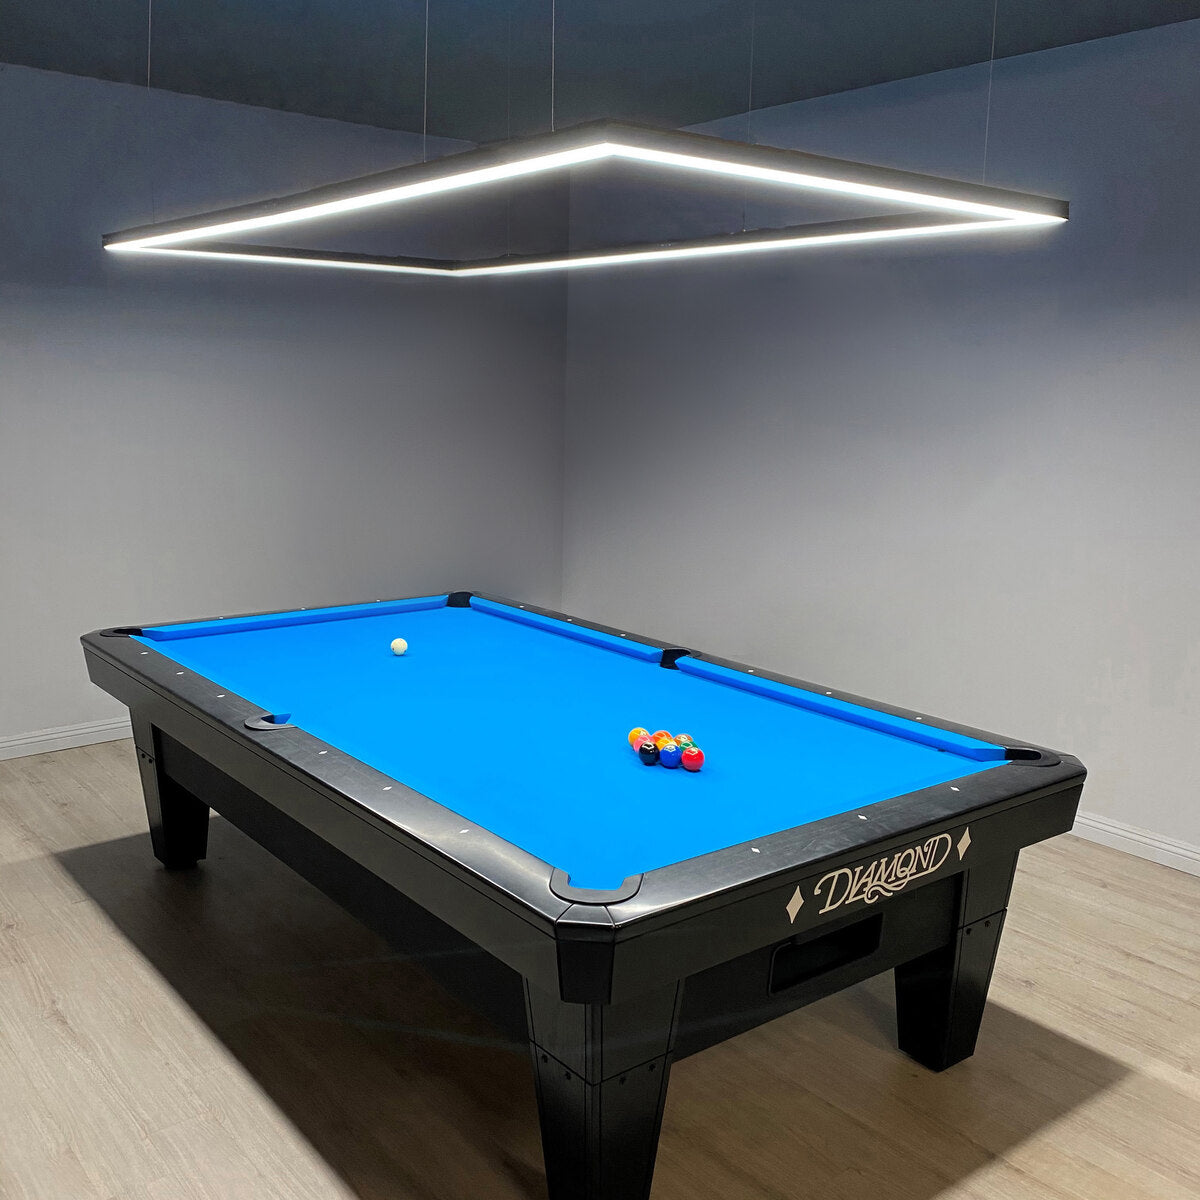 8FT perimeter led pool table light